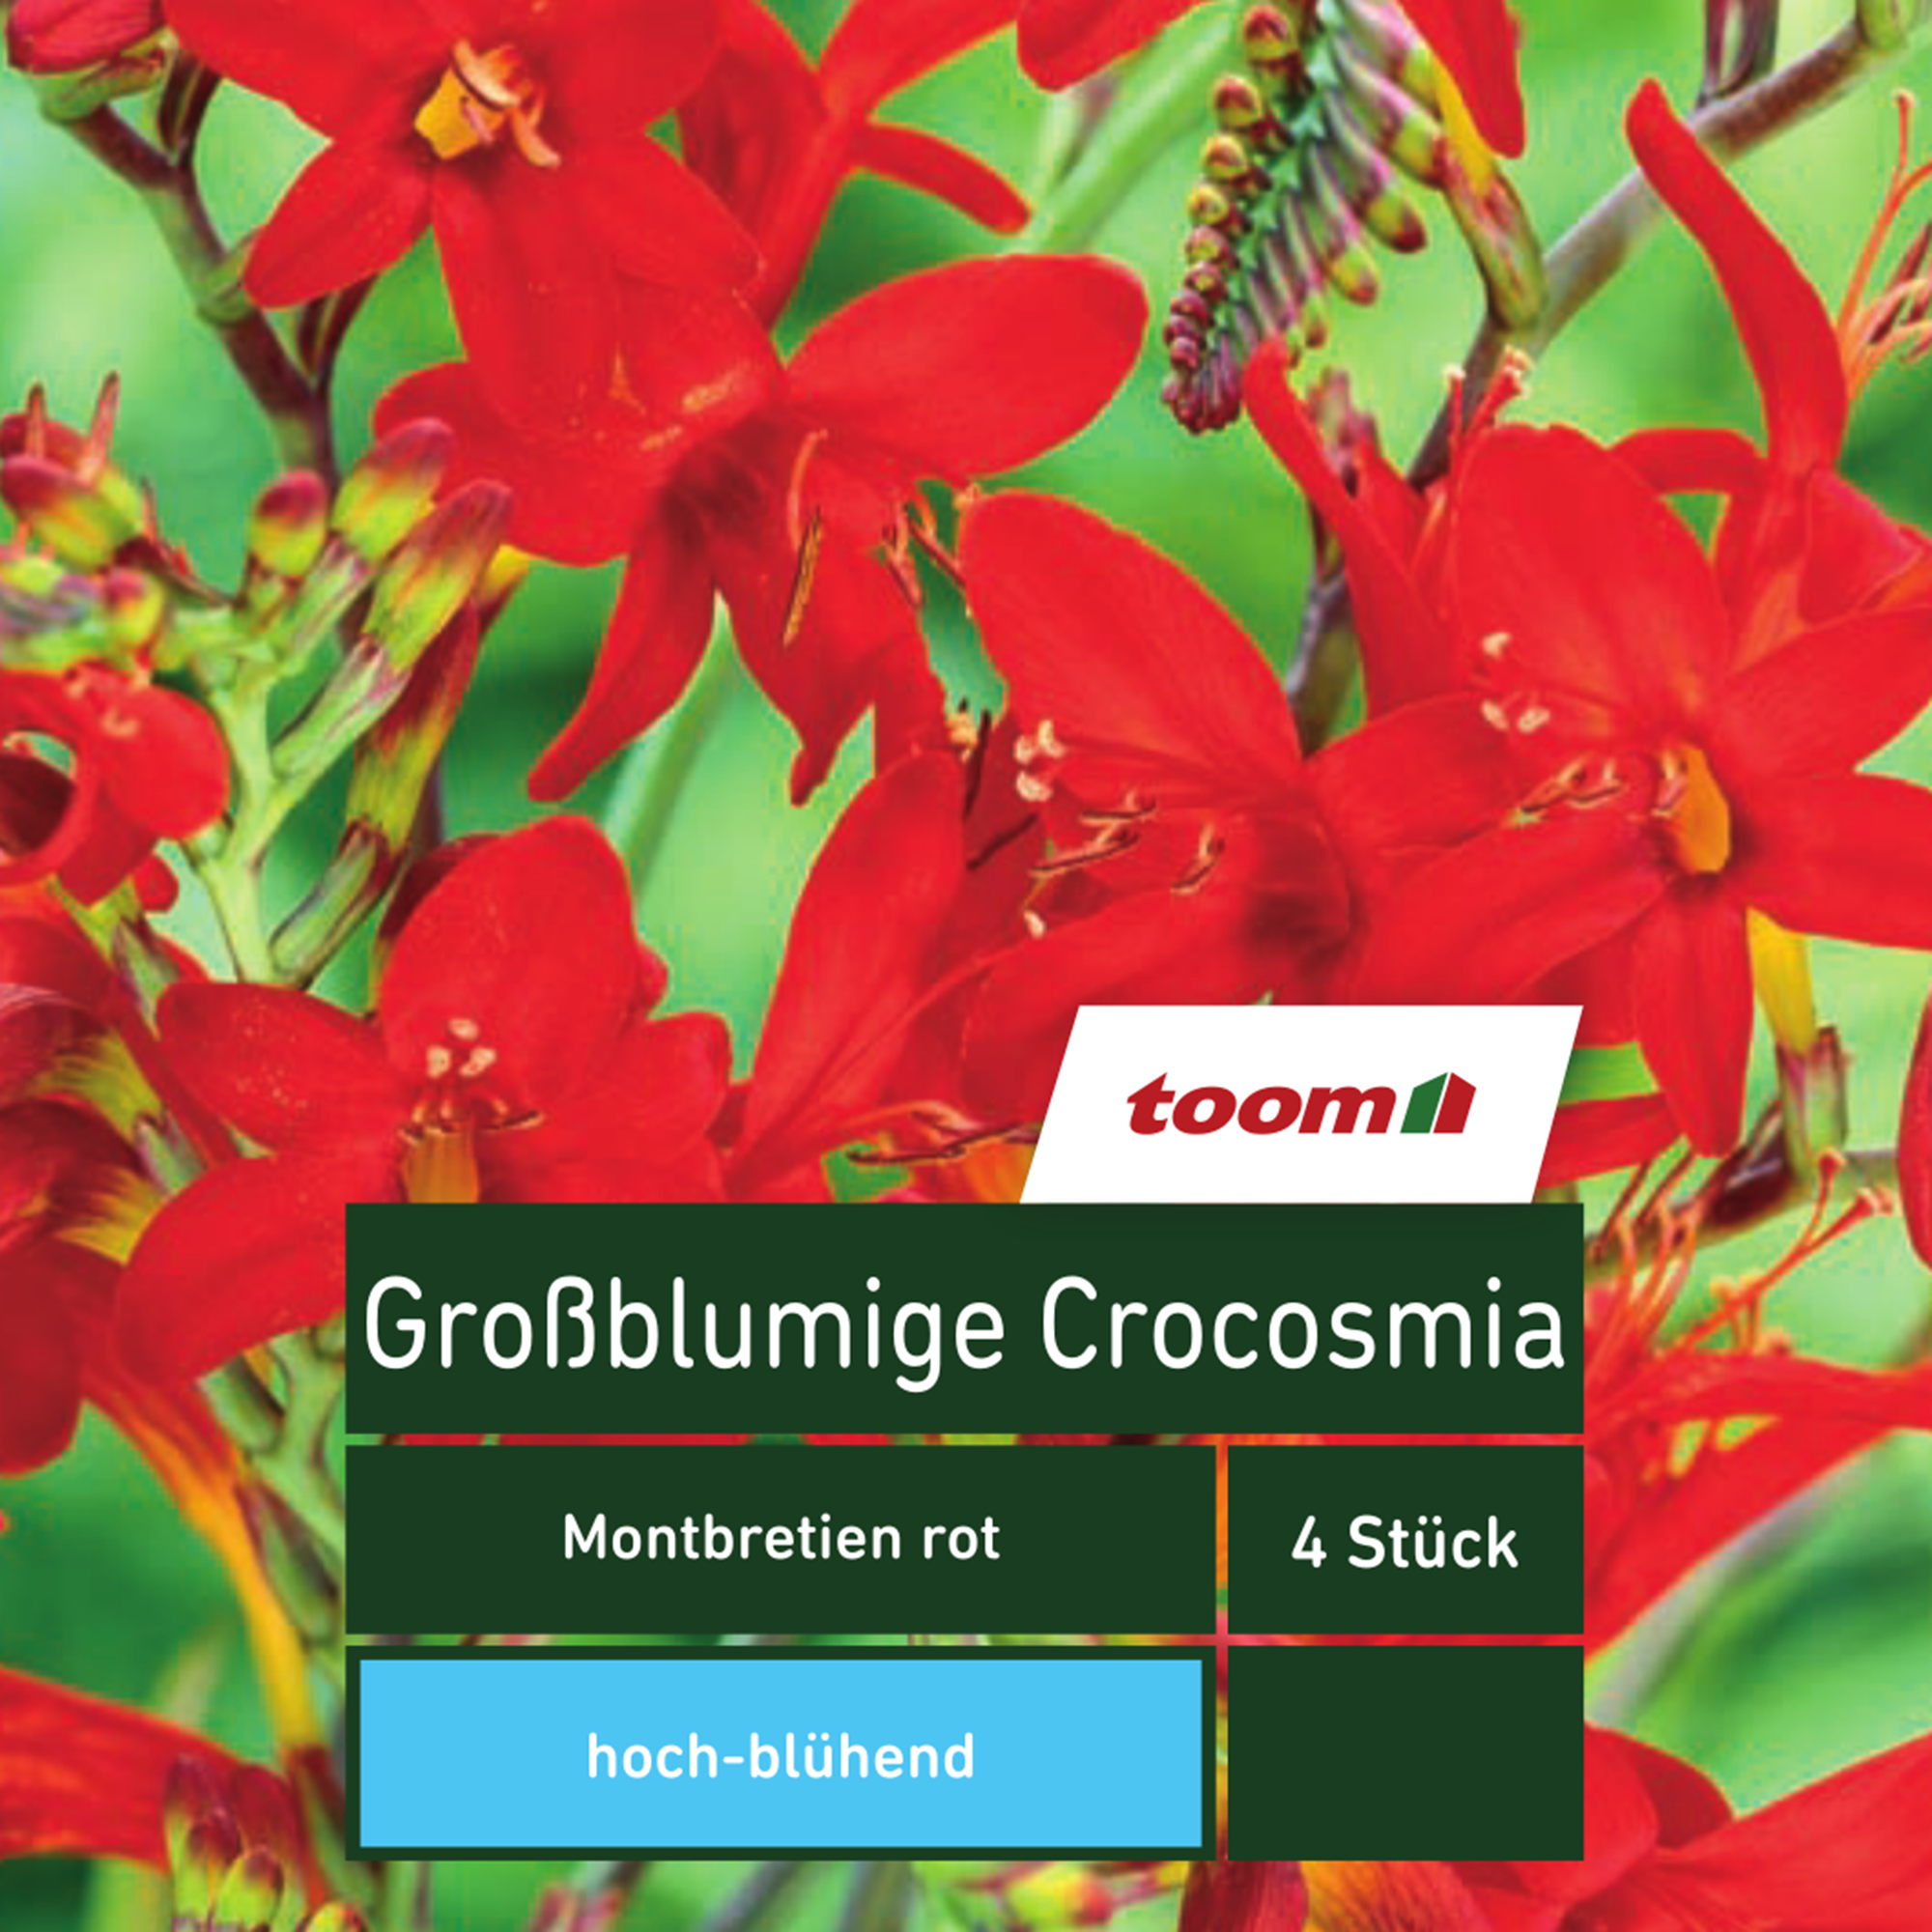 Blumenzwiebeln Großblumige Crocosmia Montbretien rot 4 Stück + product picture